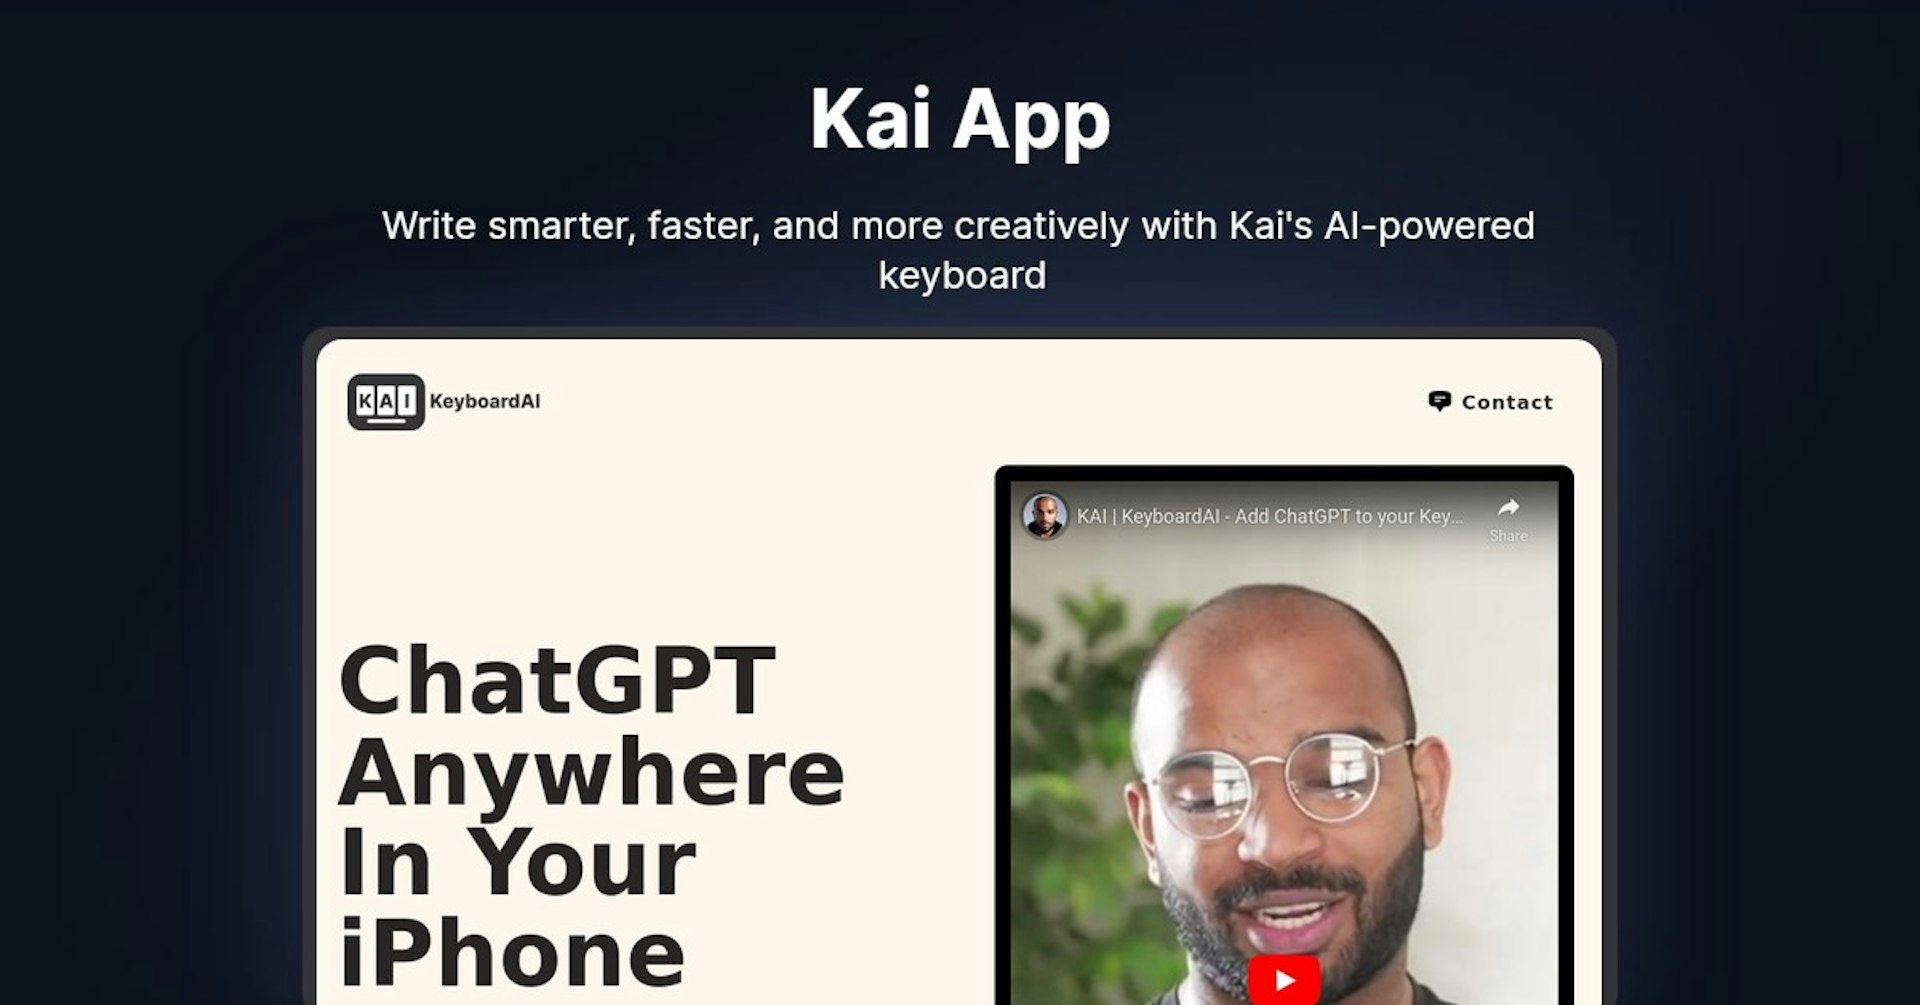 Kai App